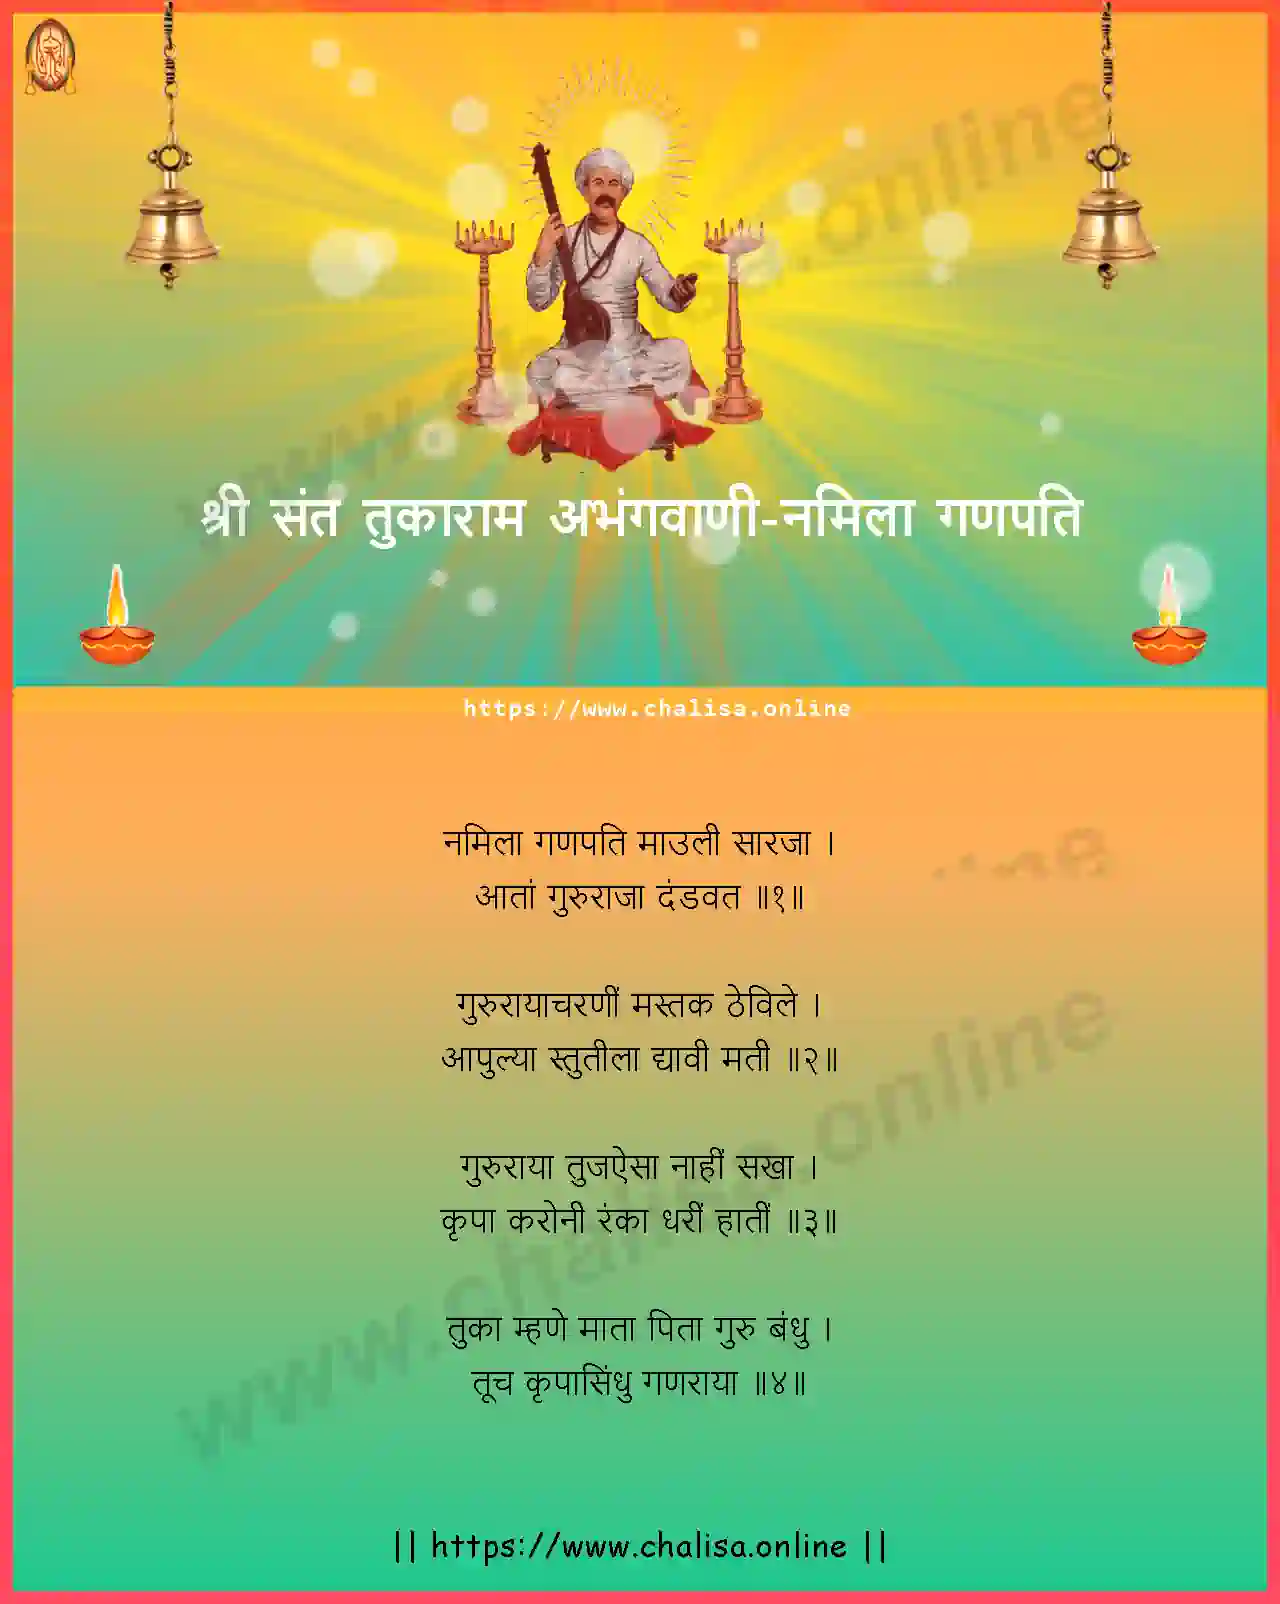 namila-ganapati-shri-sant-tukaram-abhang-marathi-lyrics-download